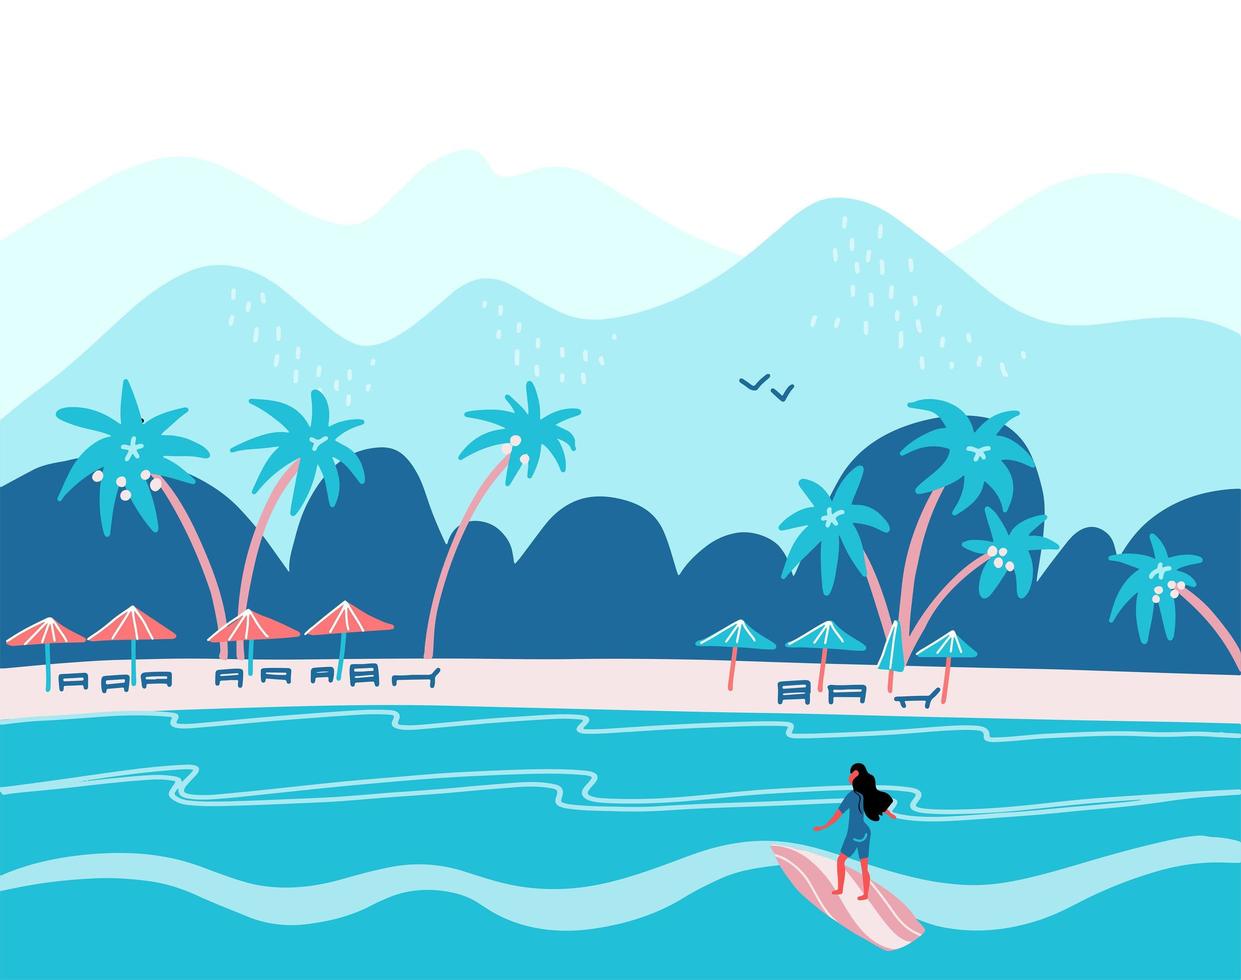 ragazza di surf su una spiaggia. palma, sabbia, oceano sullo sfondo. banner, sito, modello di poster con posto per il tuo testo. illustrazione vettoriale piatta nei colori blu